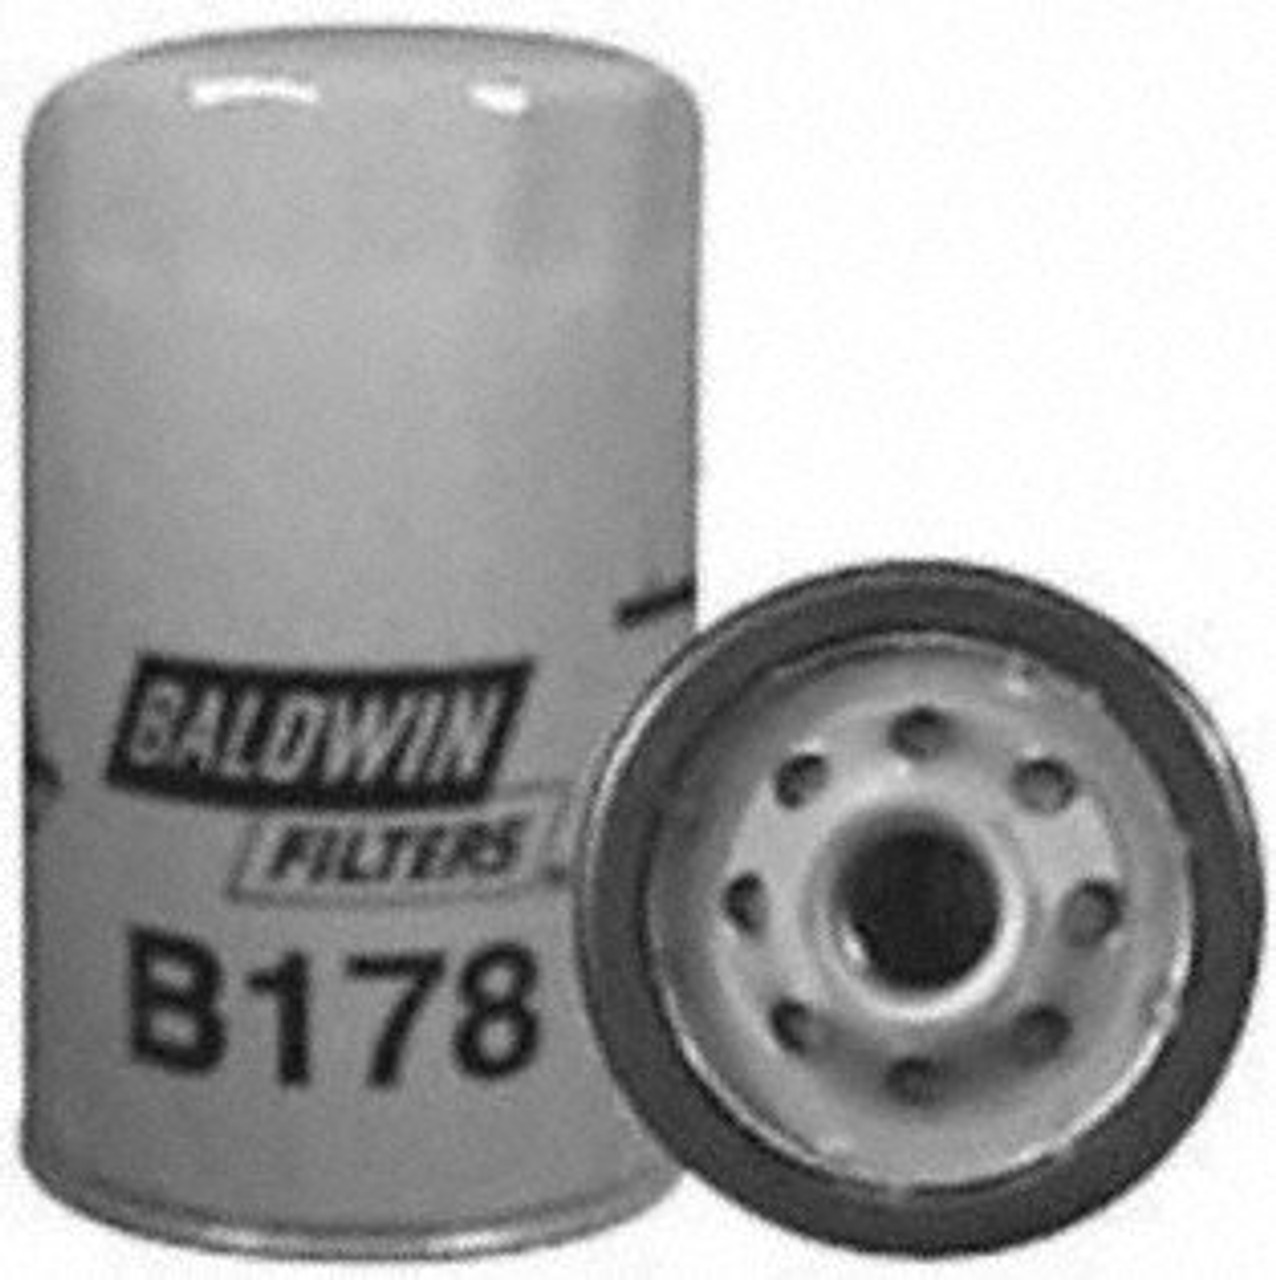 Baldwin B178 Lube Spin-on